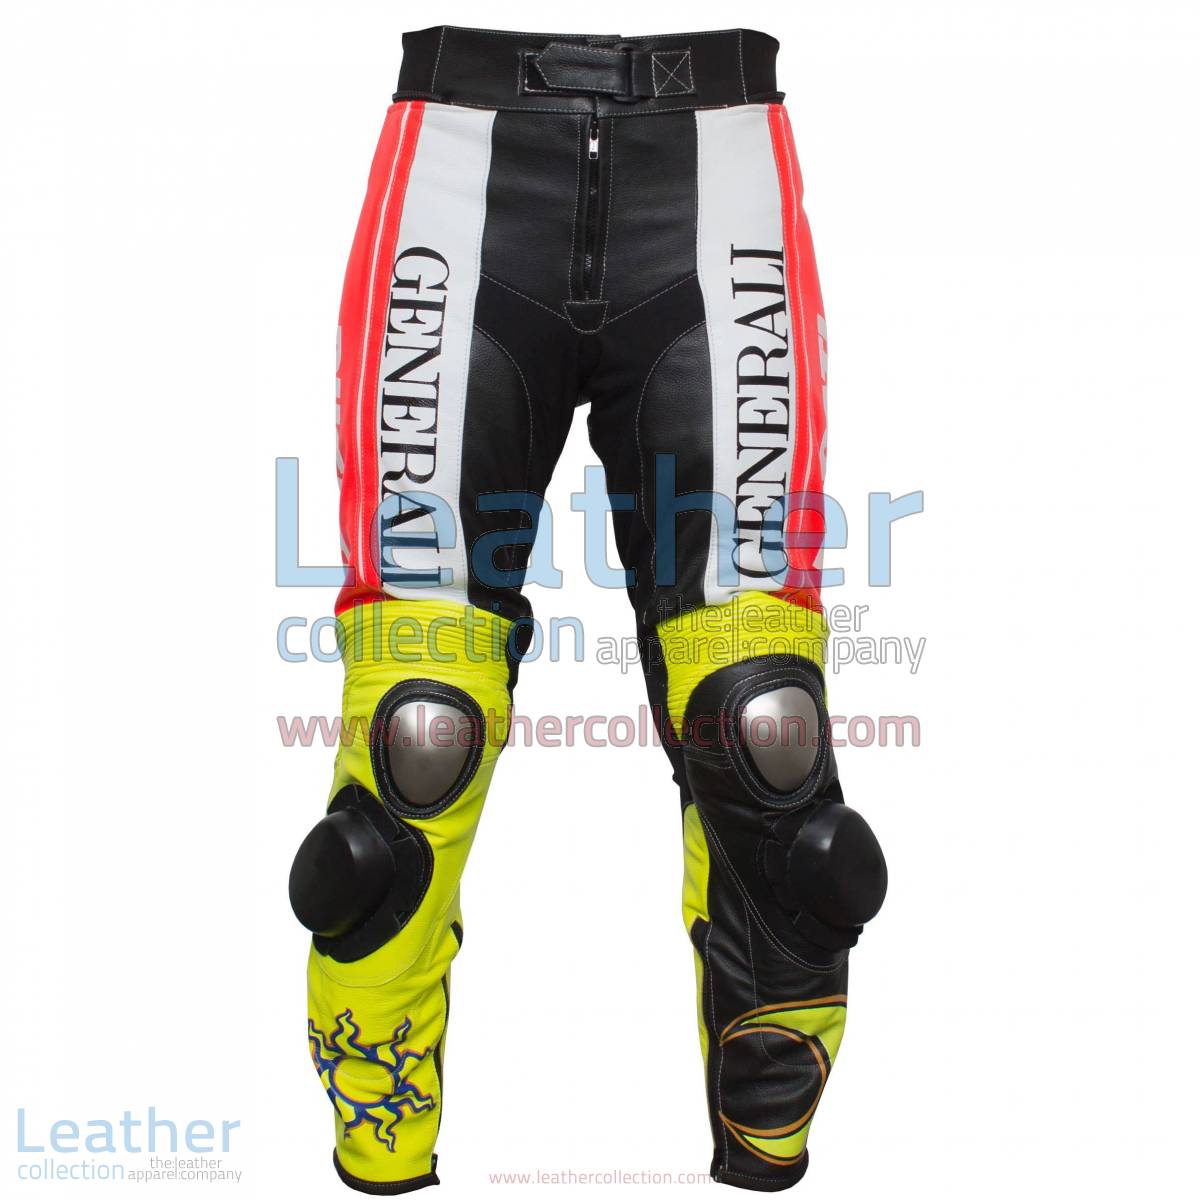 Valentino Rossi Ducati Corse Leather Pants | Ducati leather pants,Valentino Rossi pants